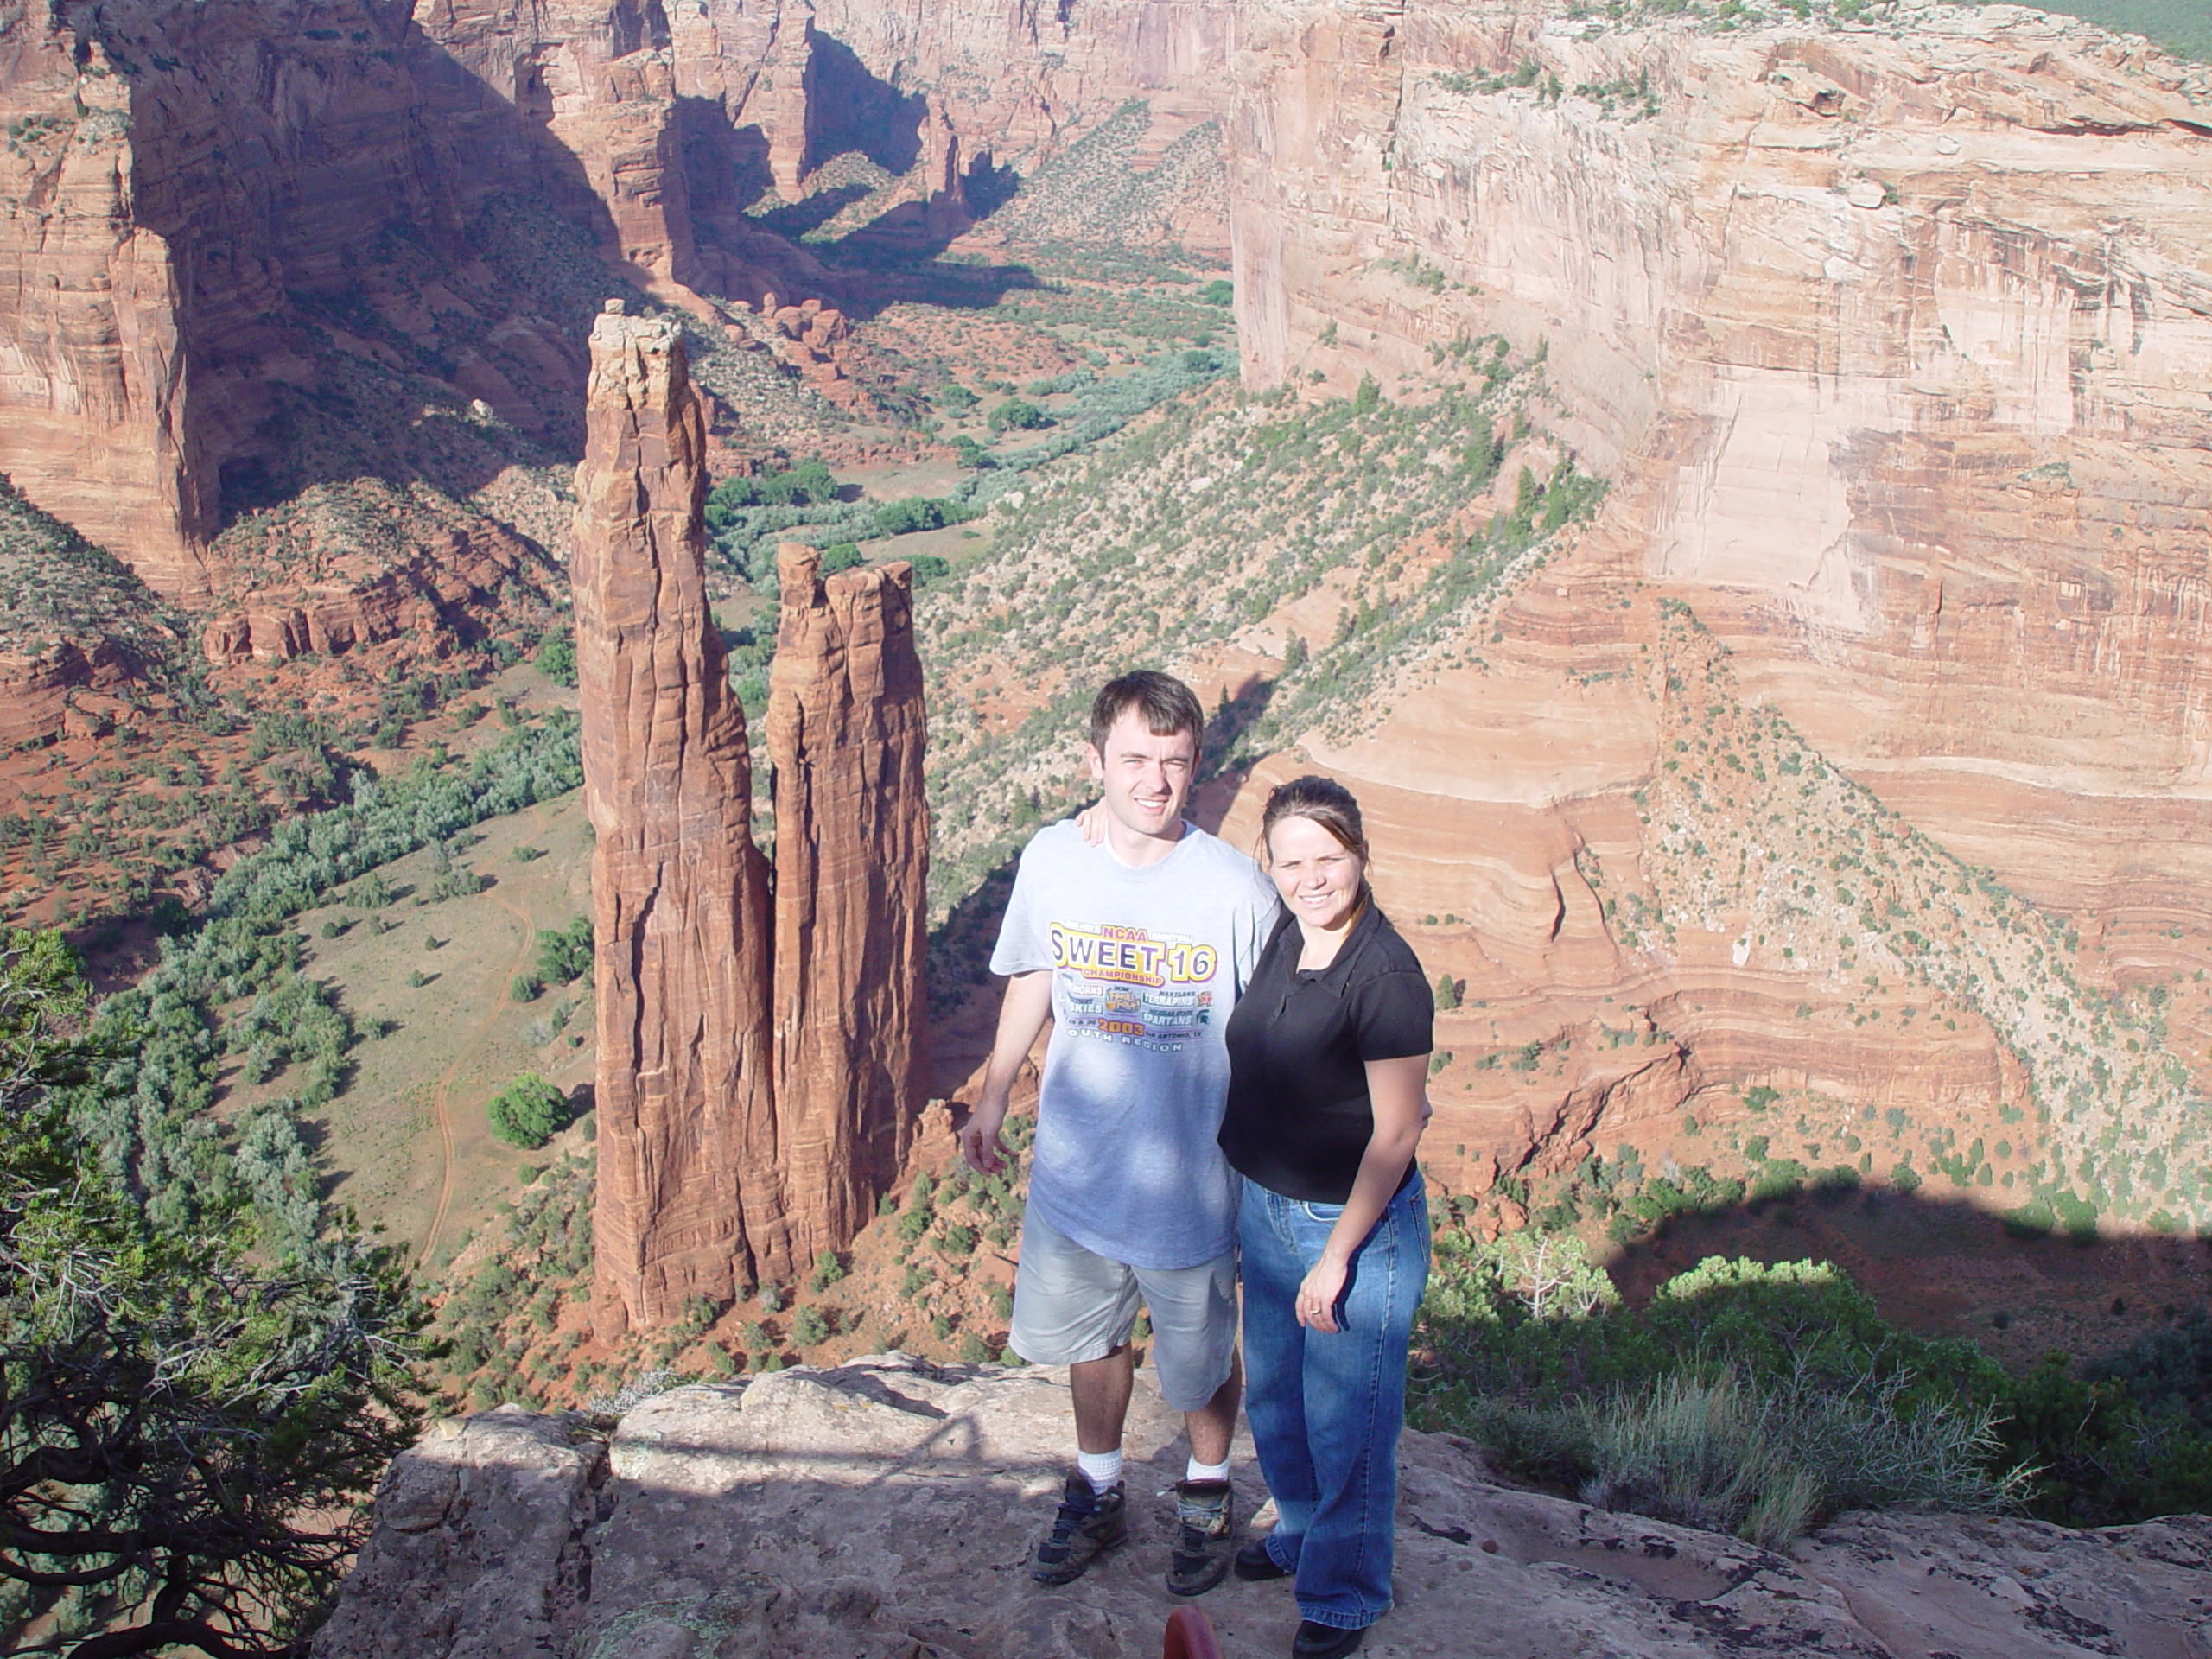 Summer 2003 - Canyon de Chelly